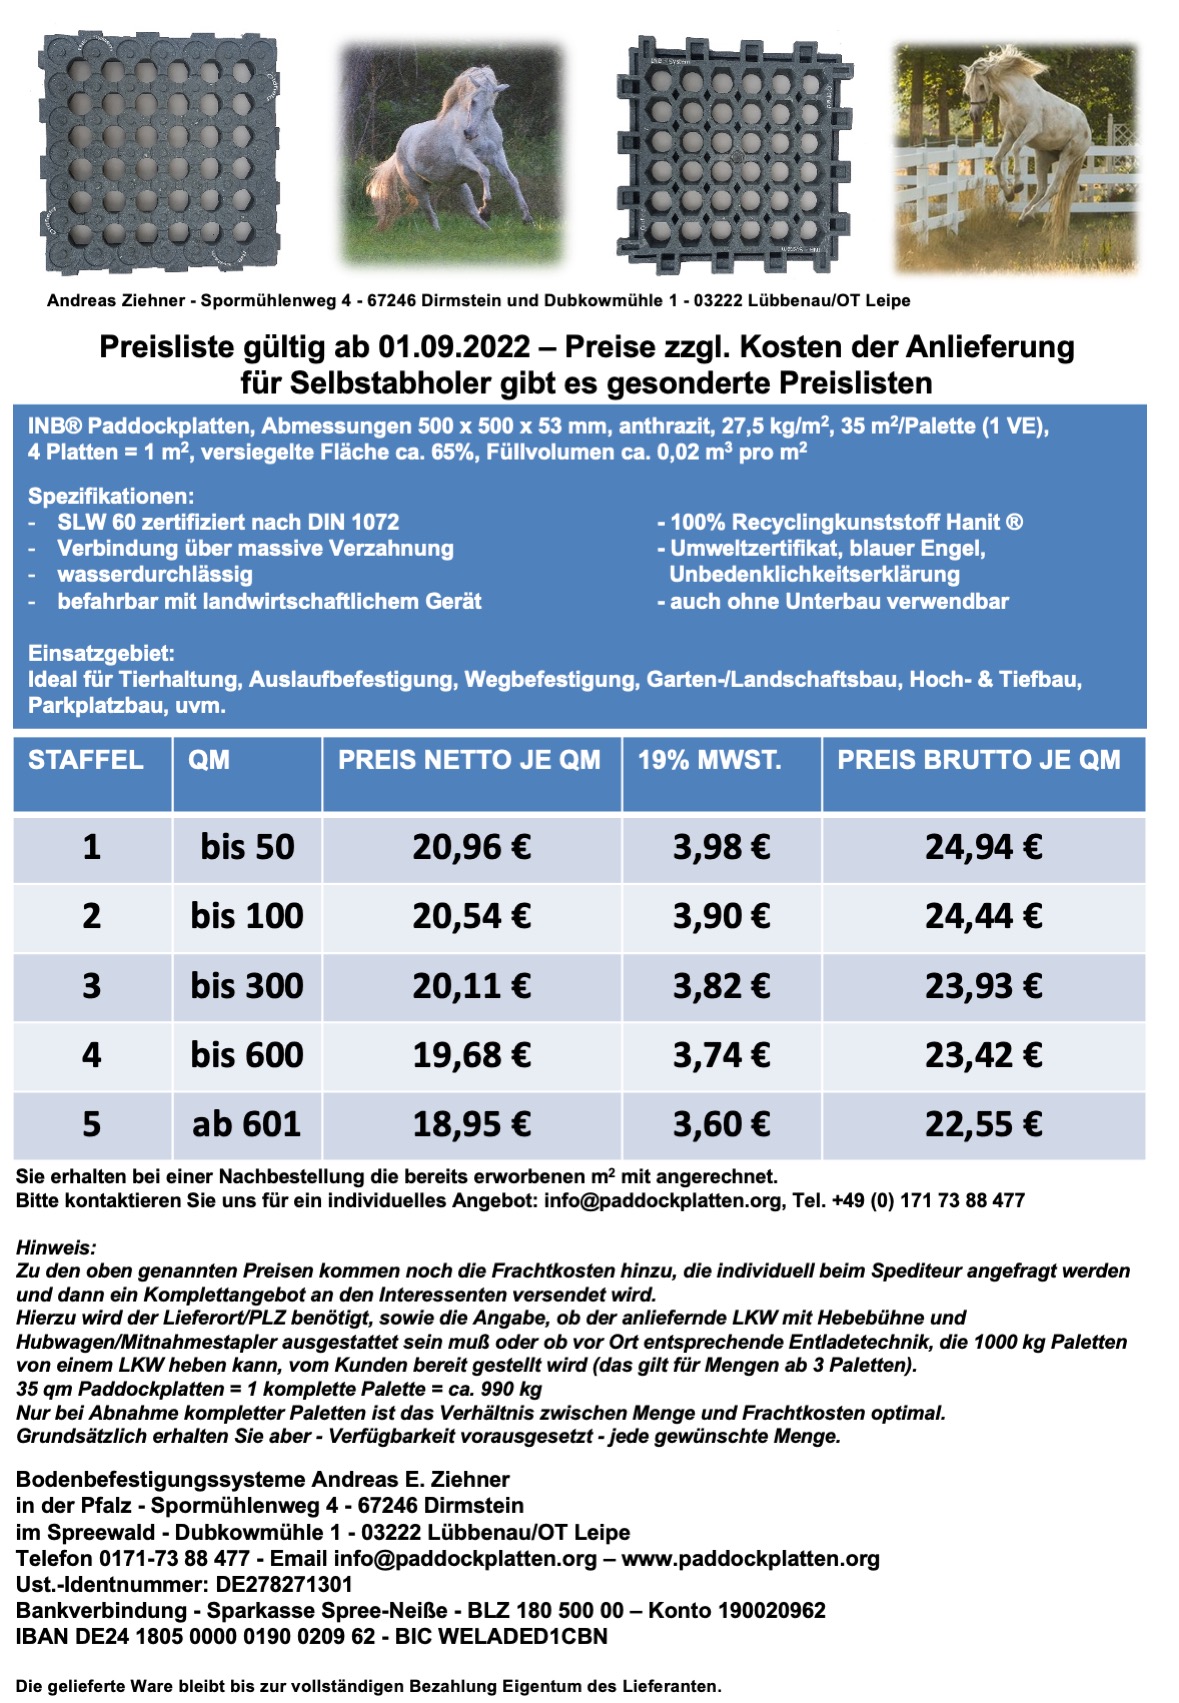 Preisliste INB Paddockplatten gültig ab 01.09.2022 Versendung